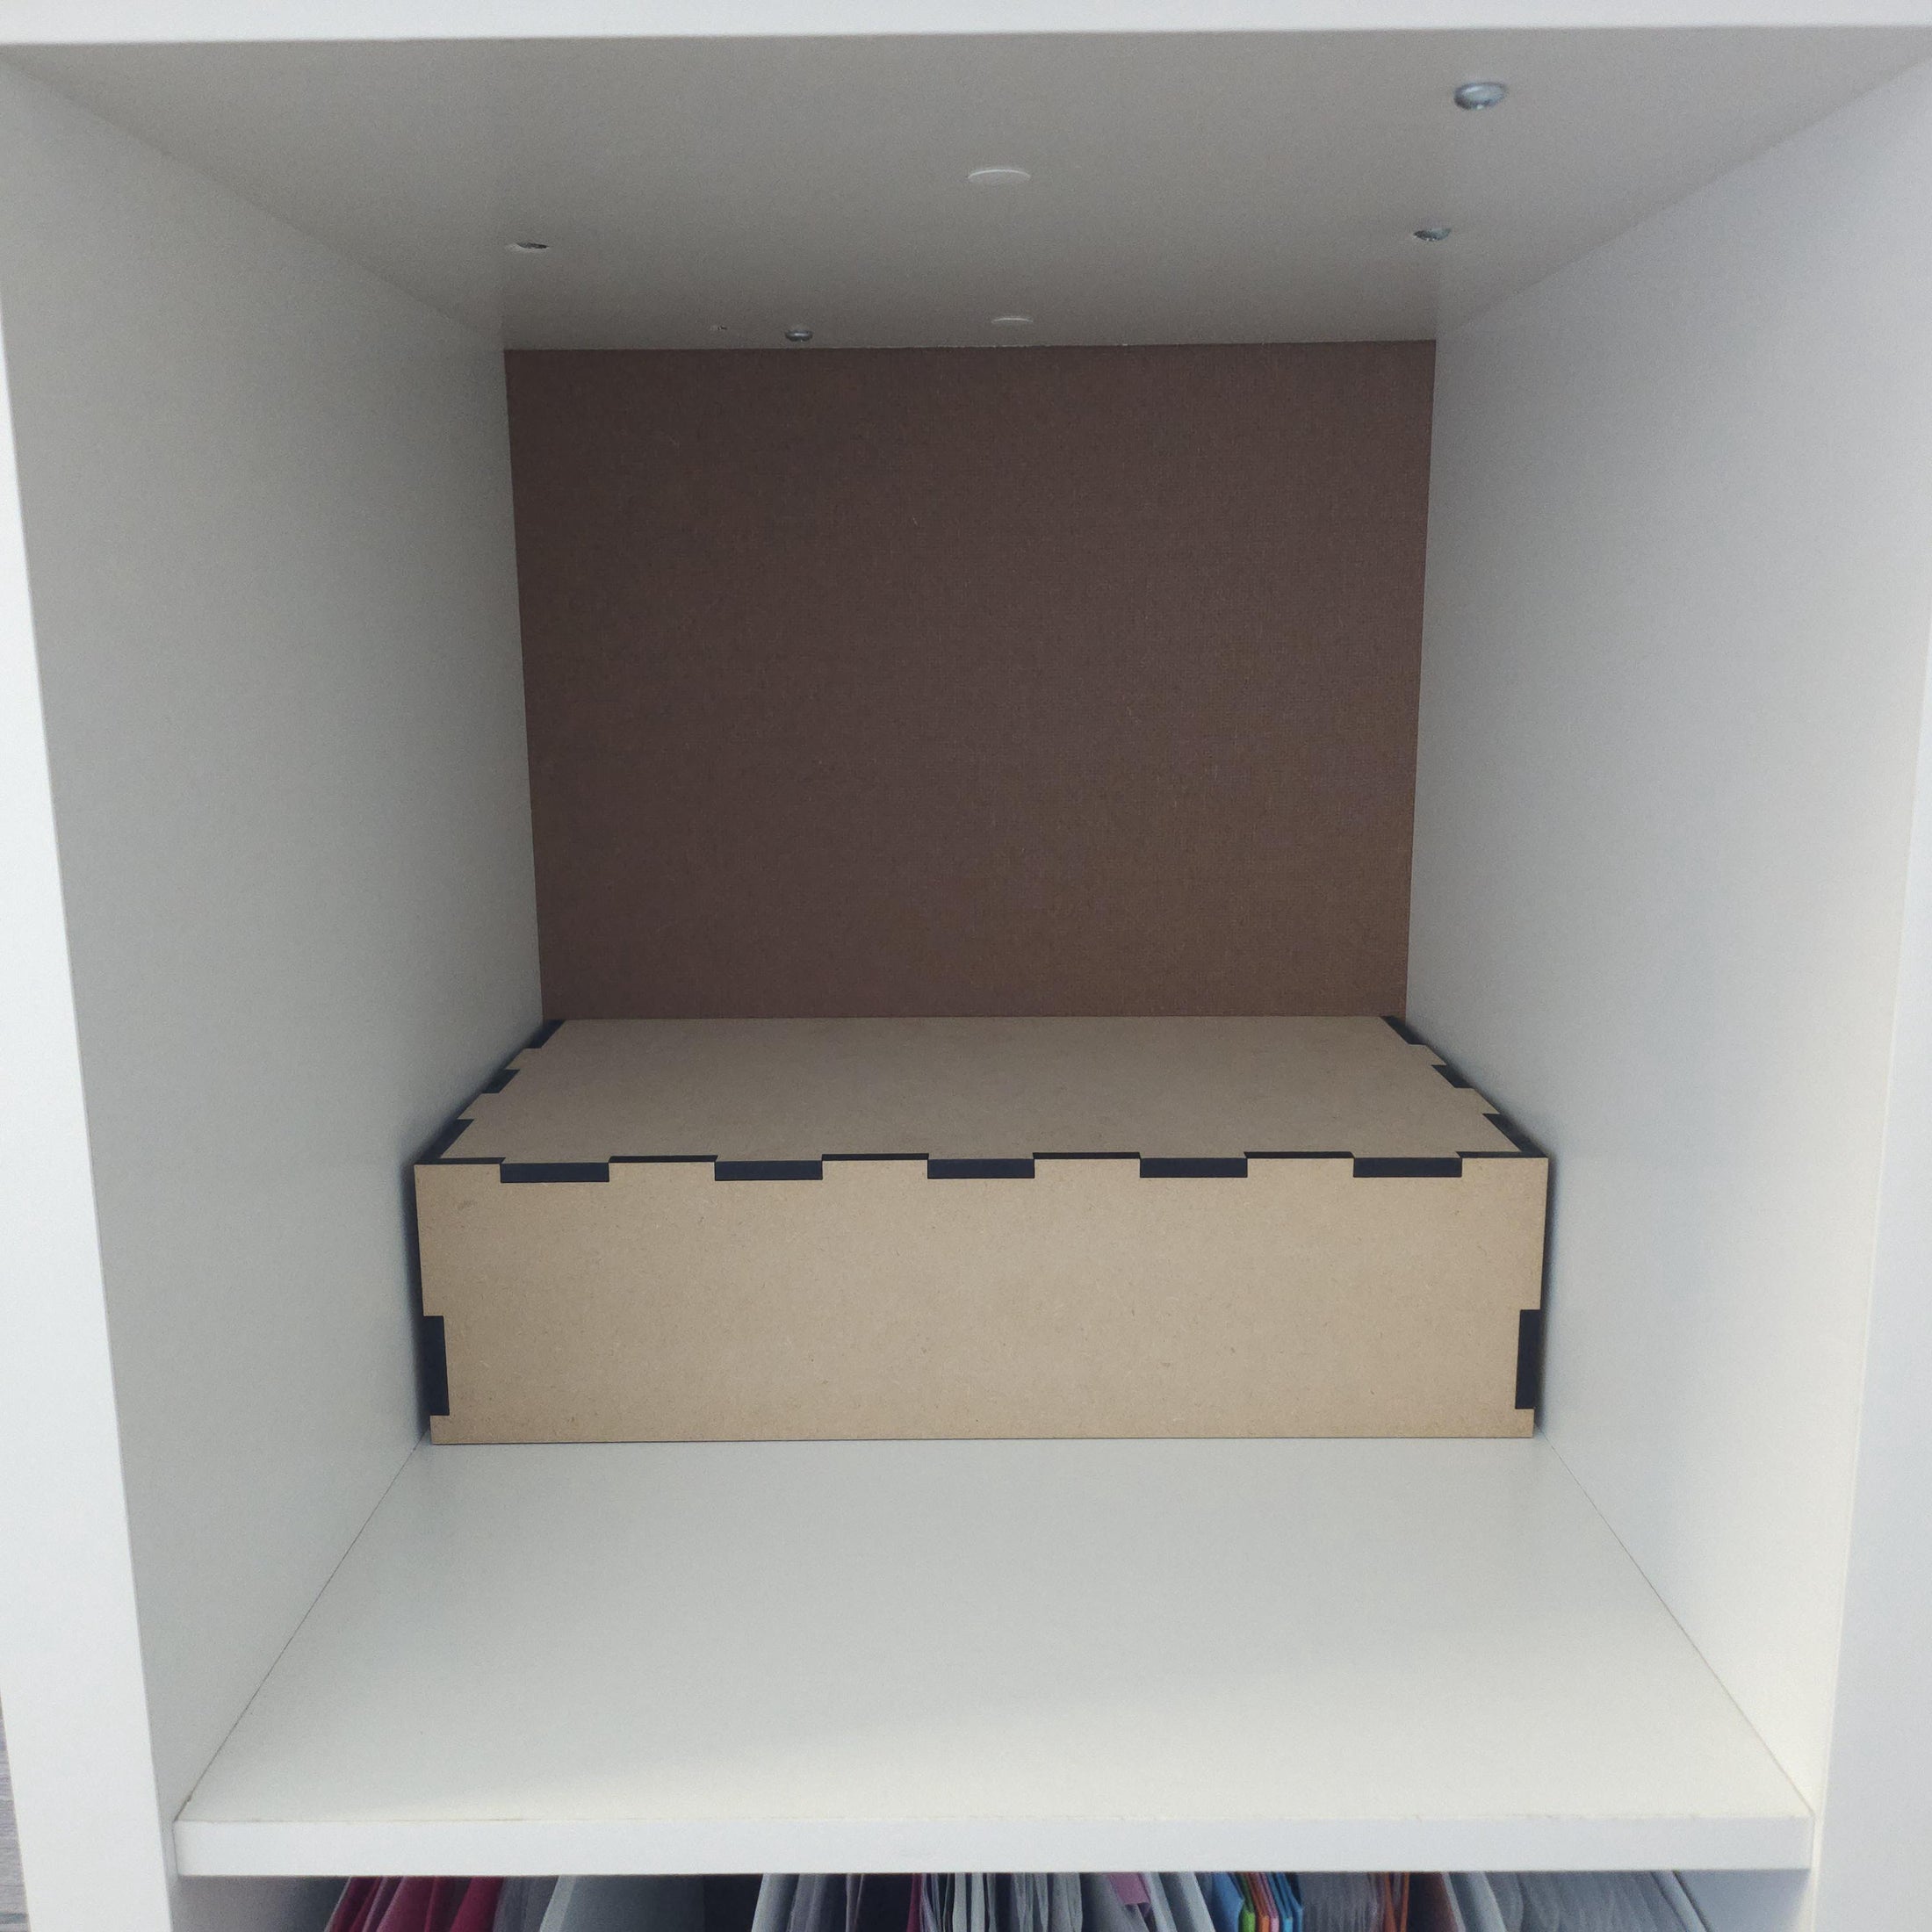 3.5" tall shelf riser for cube shelving.